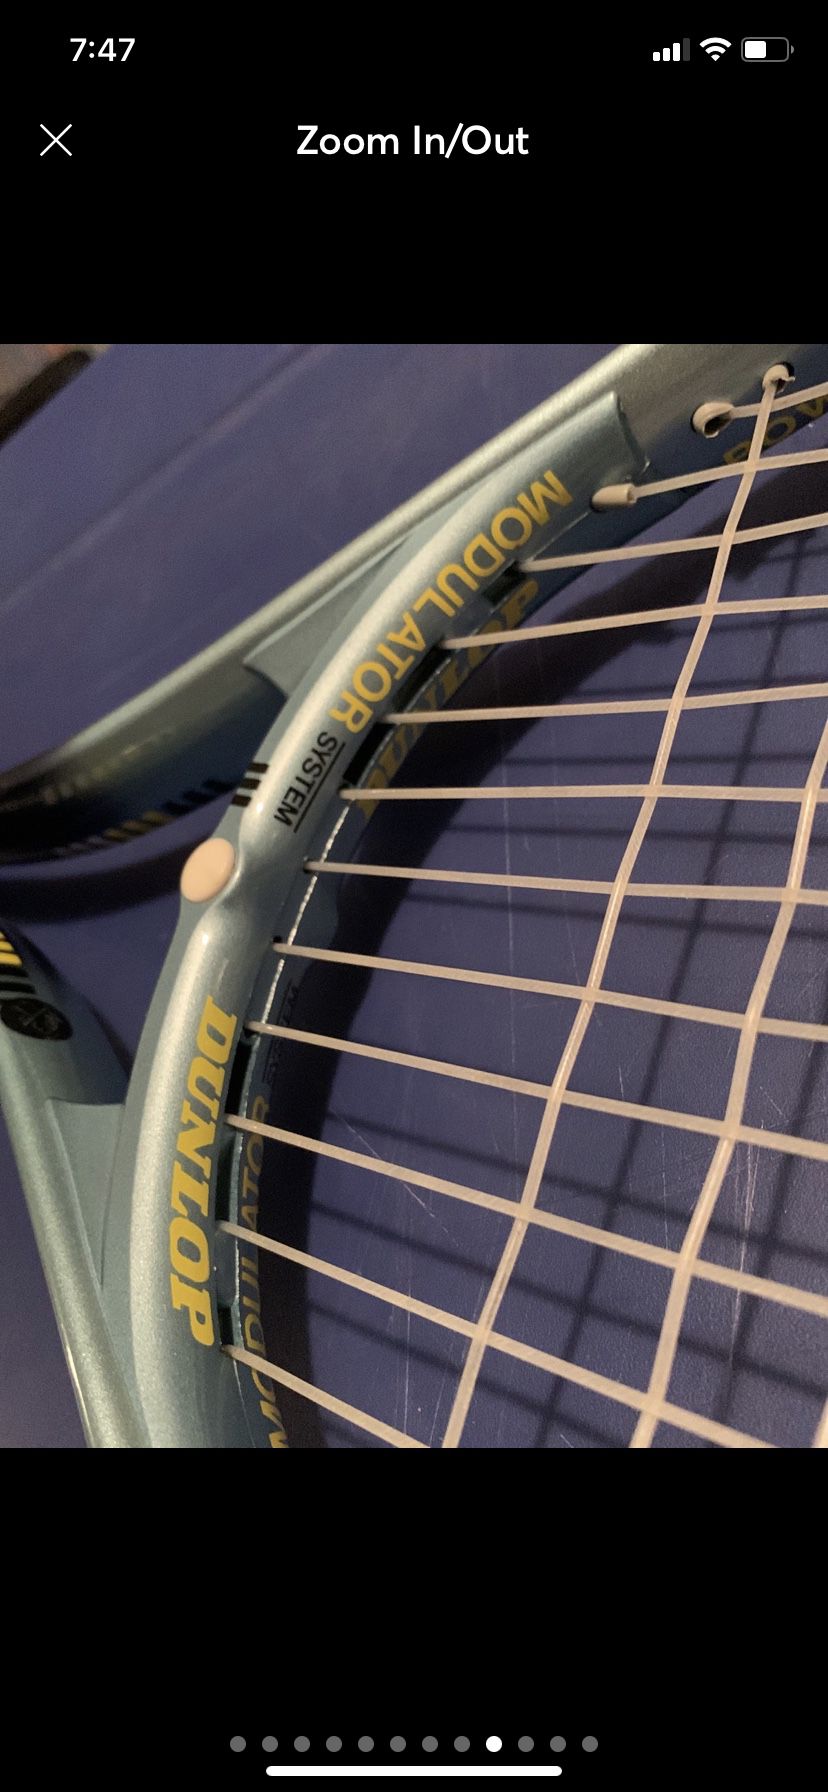 Dunlop Racket